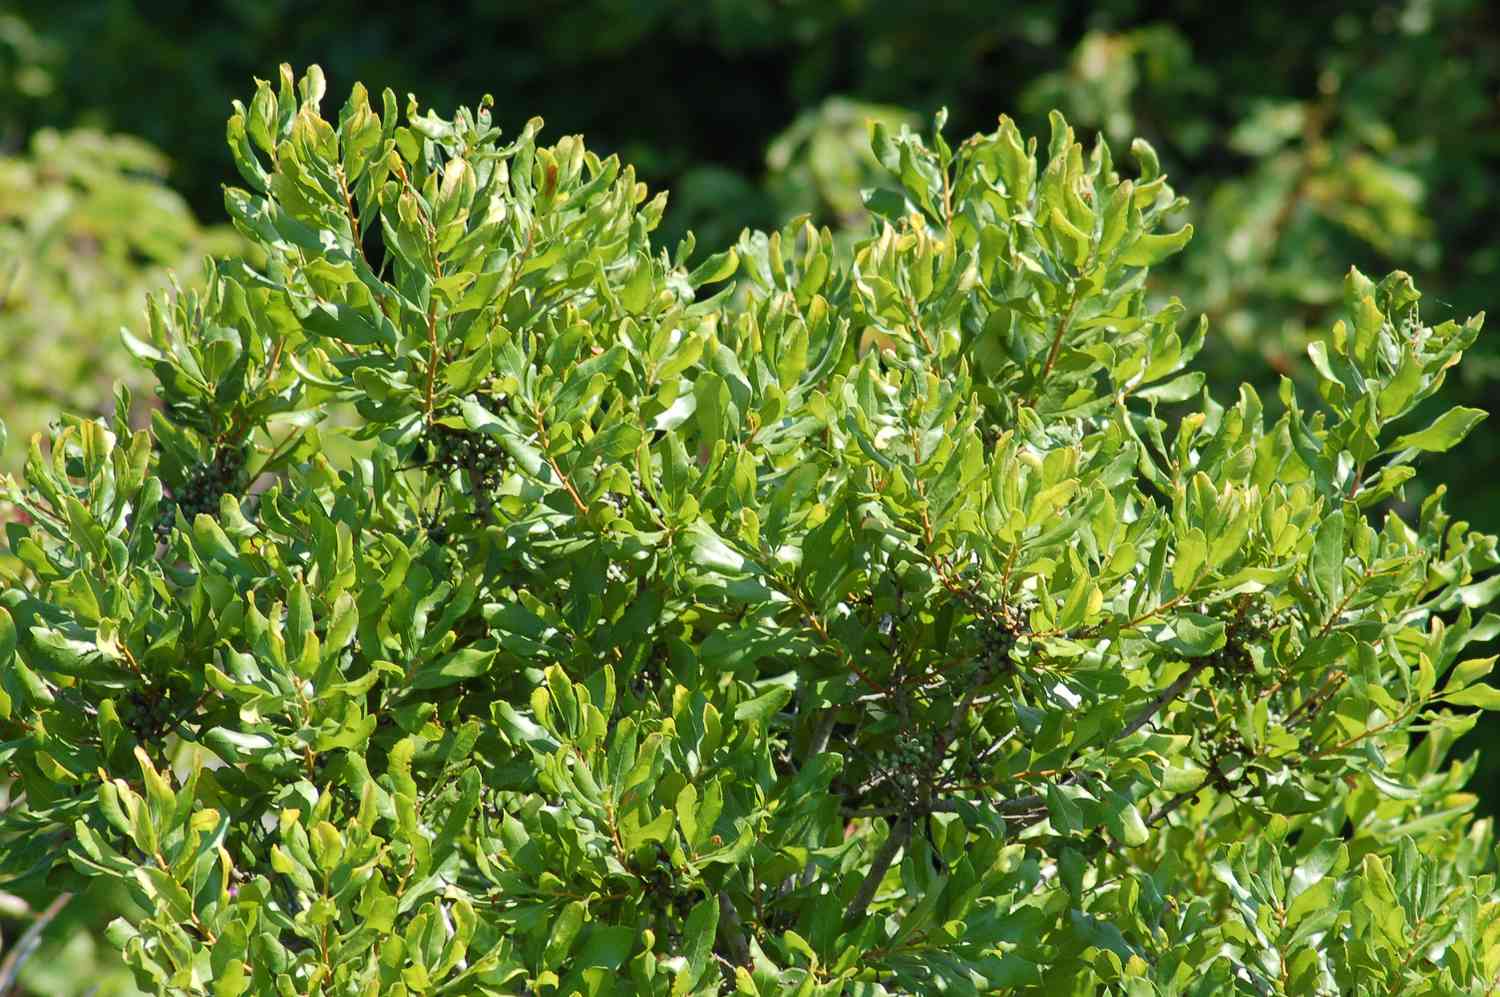 Der Lorbeerstrauch hat im Sommer grüne Blätter und entwickelt im Herbst graue Beeren.